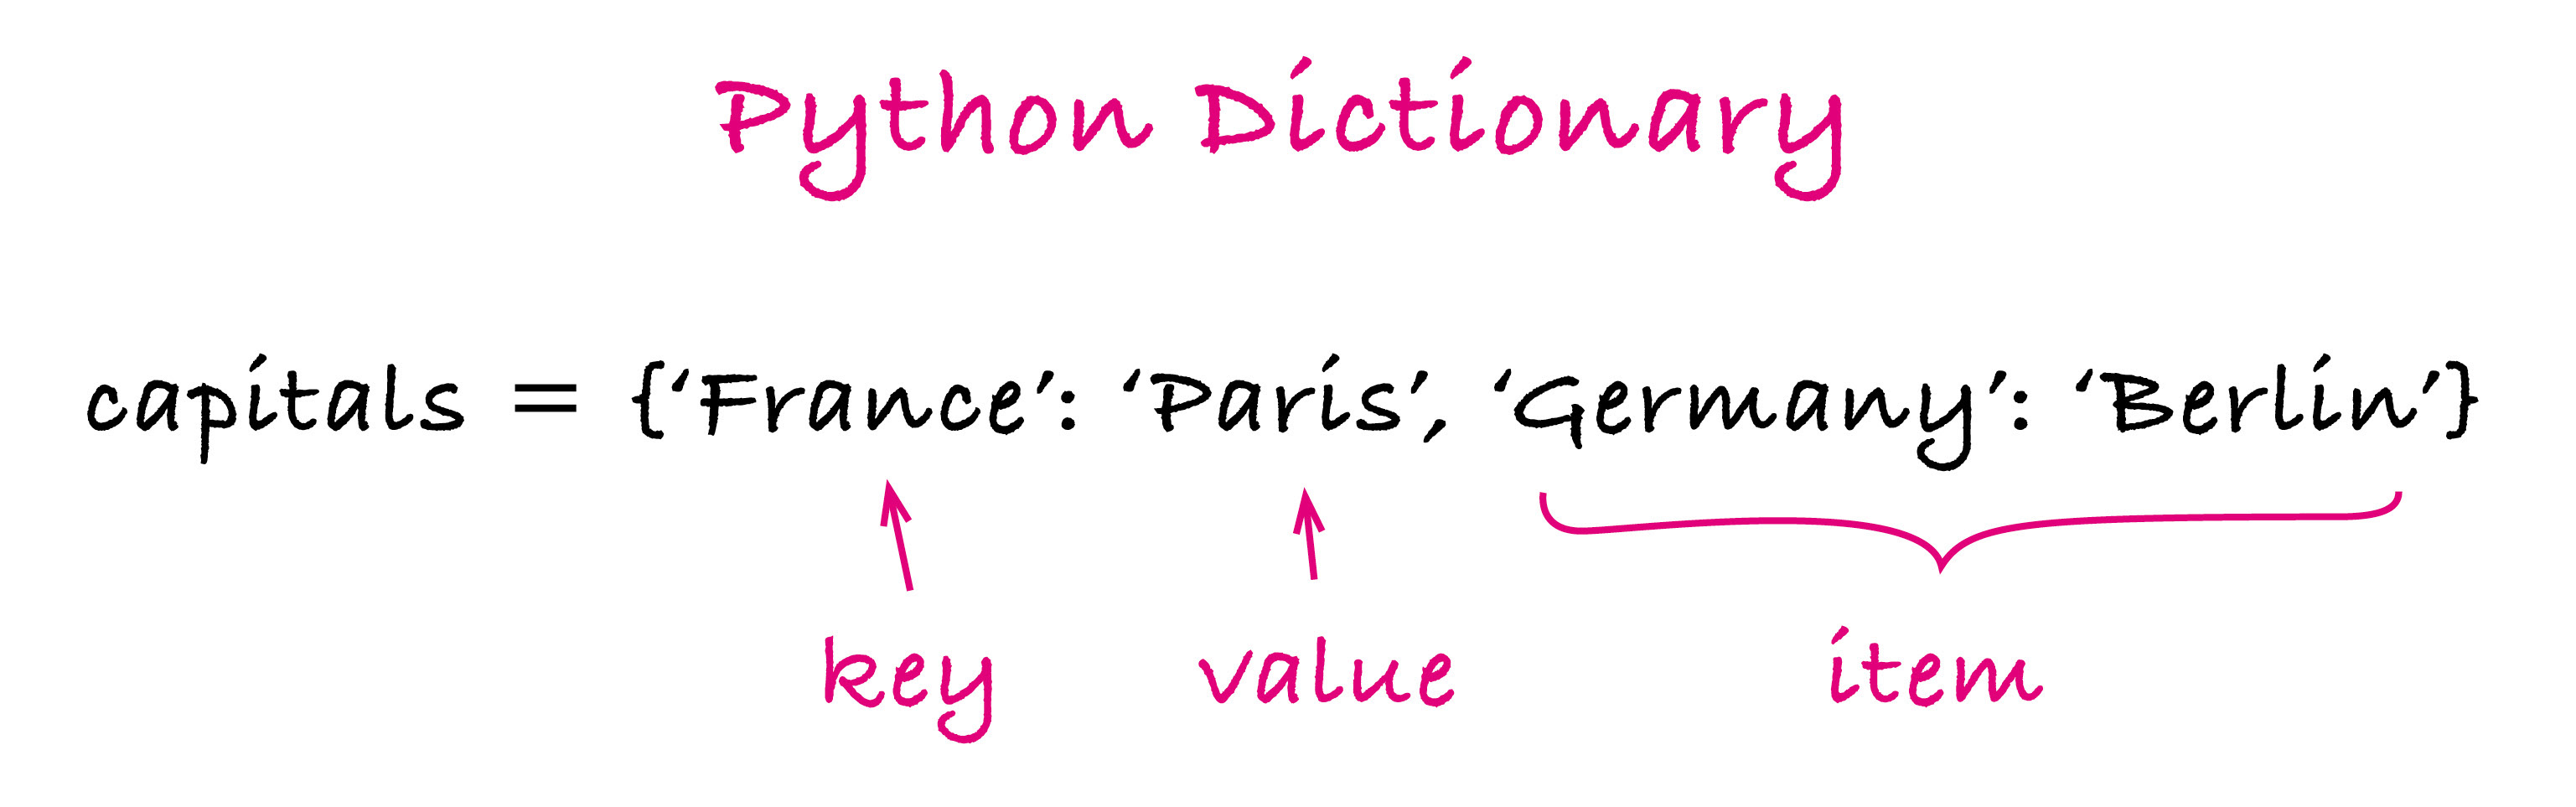 Python Dictionary 